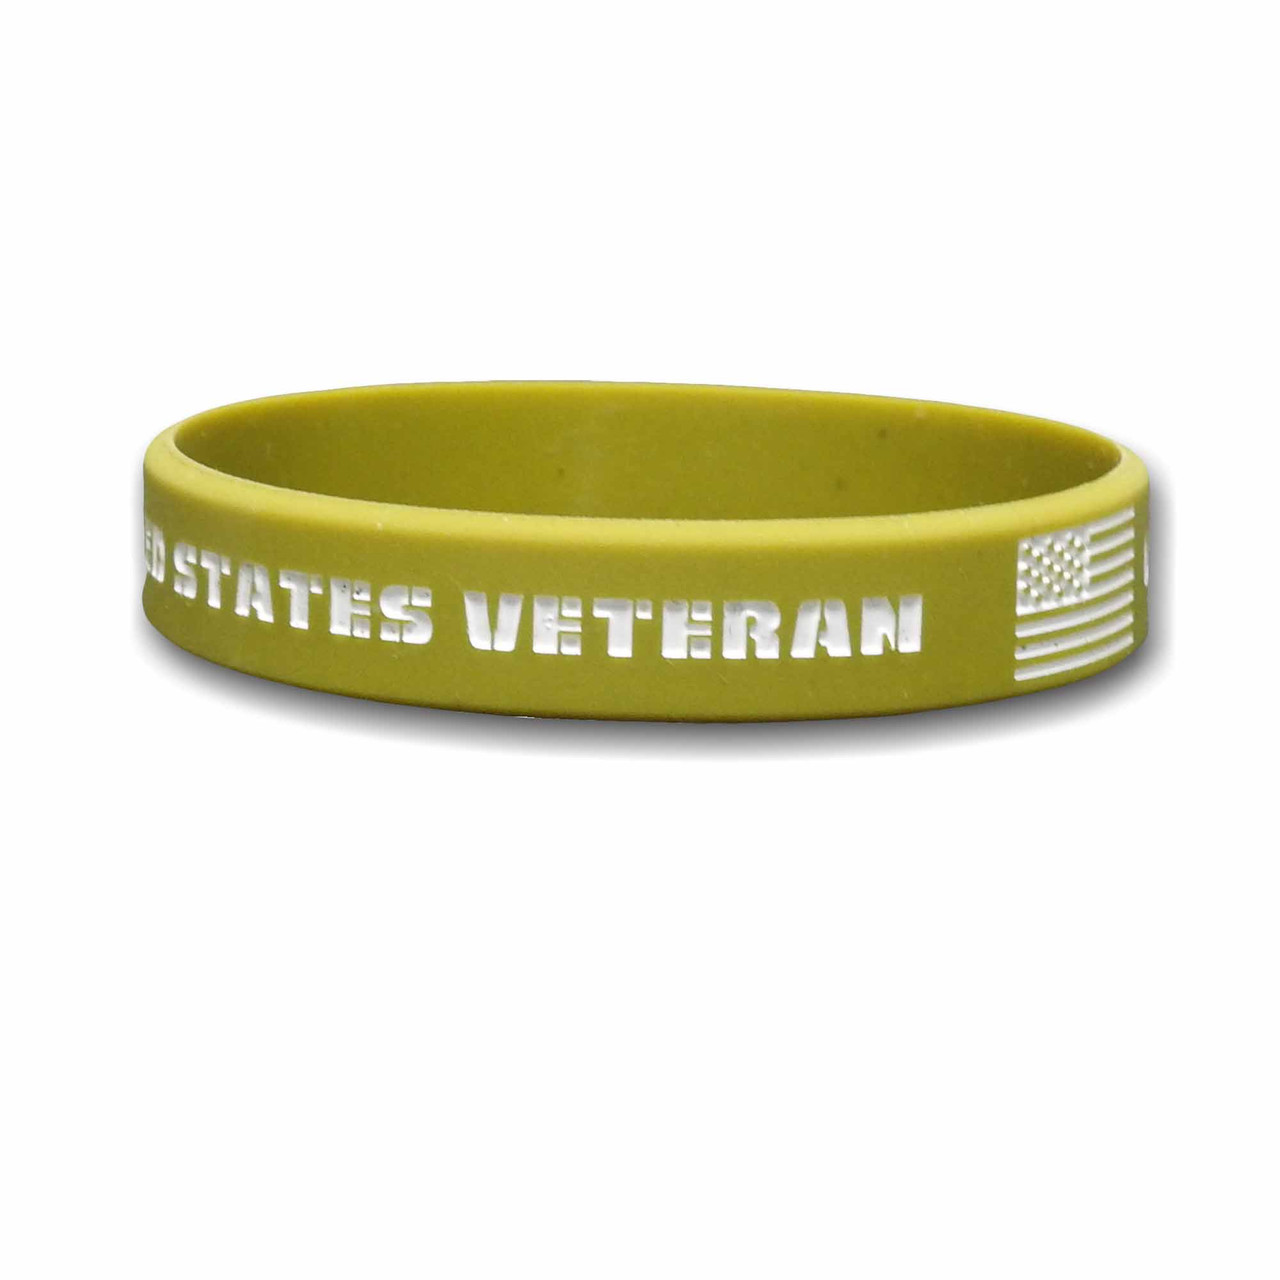 United States Veteran Silicon Wristband/Bracelet